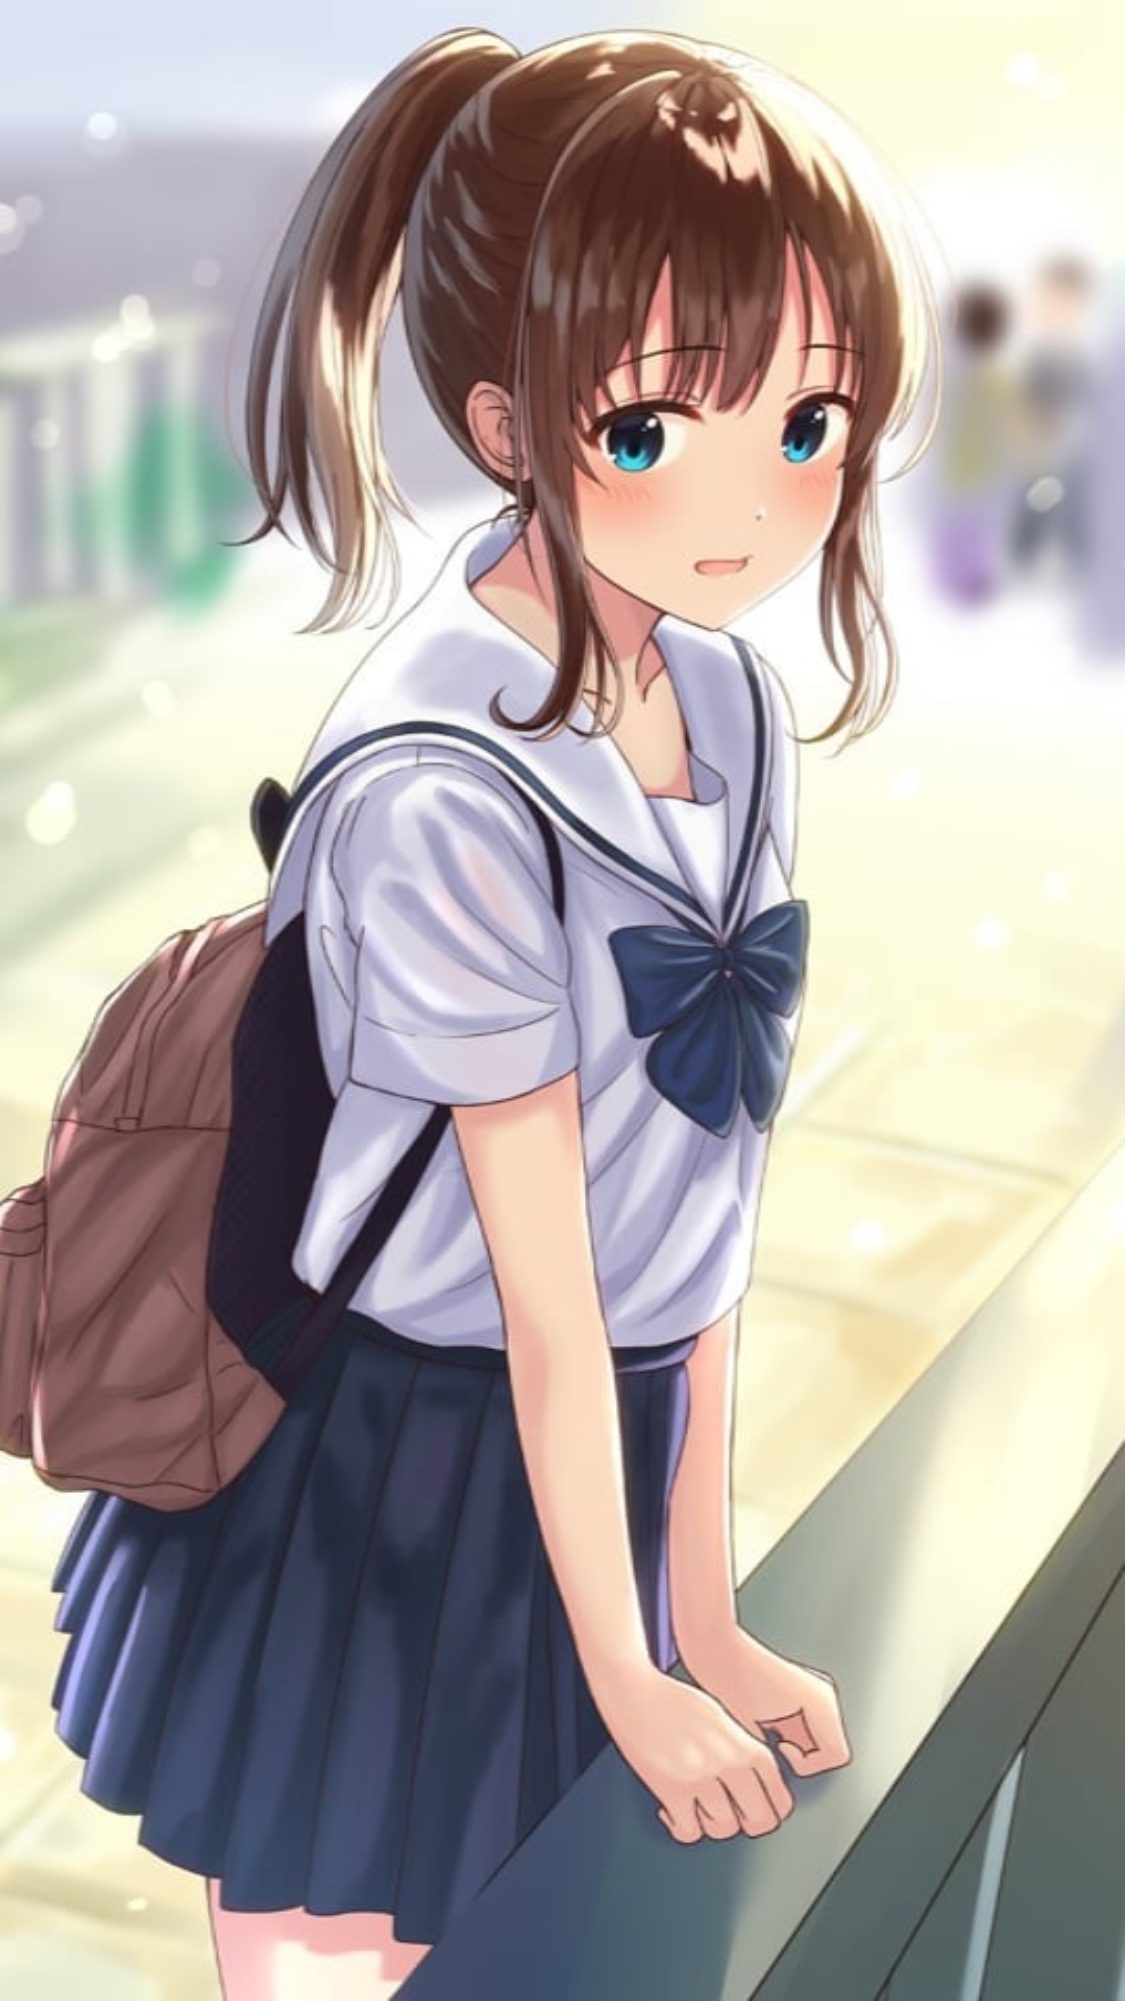 Hình Ảnh Anime Girl Dễ Thương, Cute Mang Nét Buồn Nhẹ Nhàng